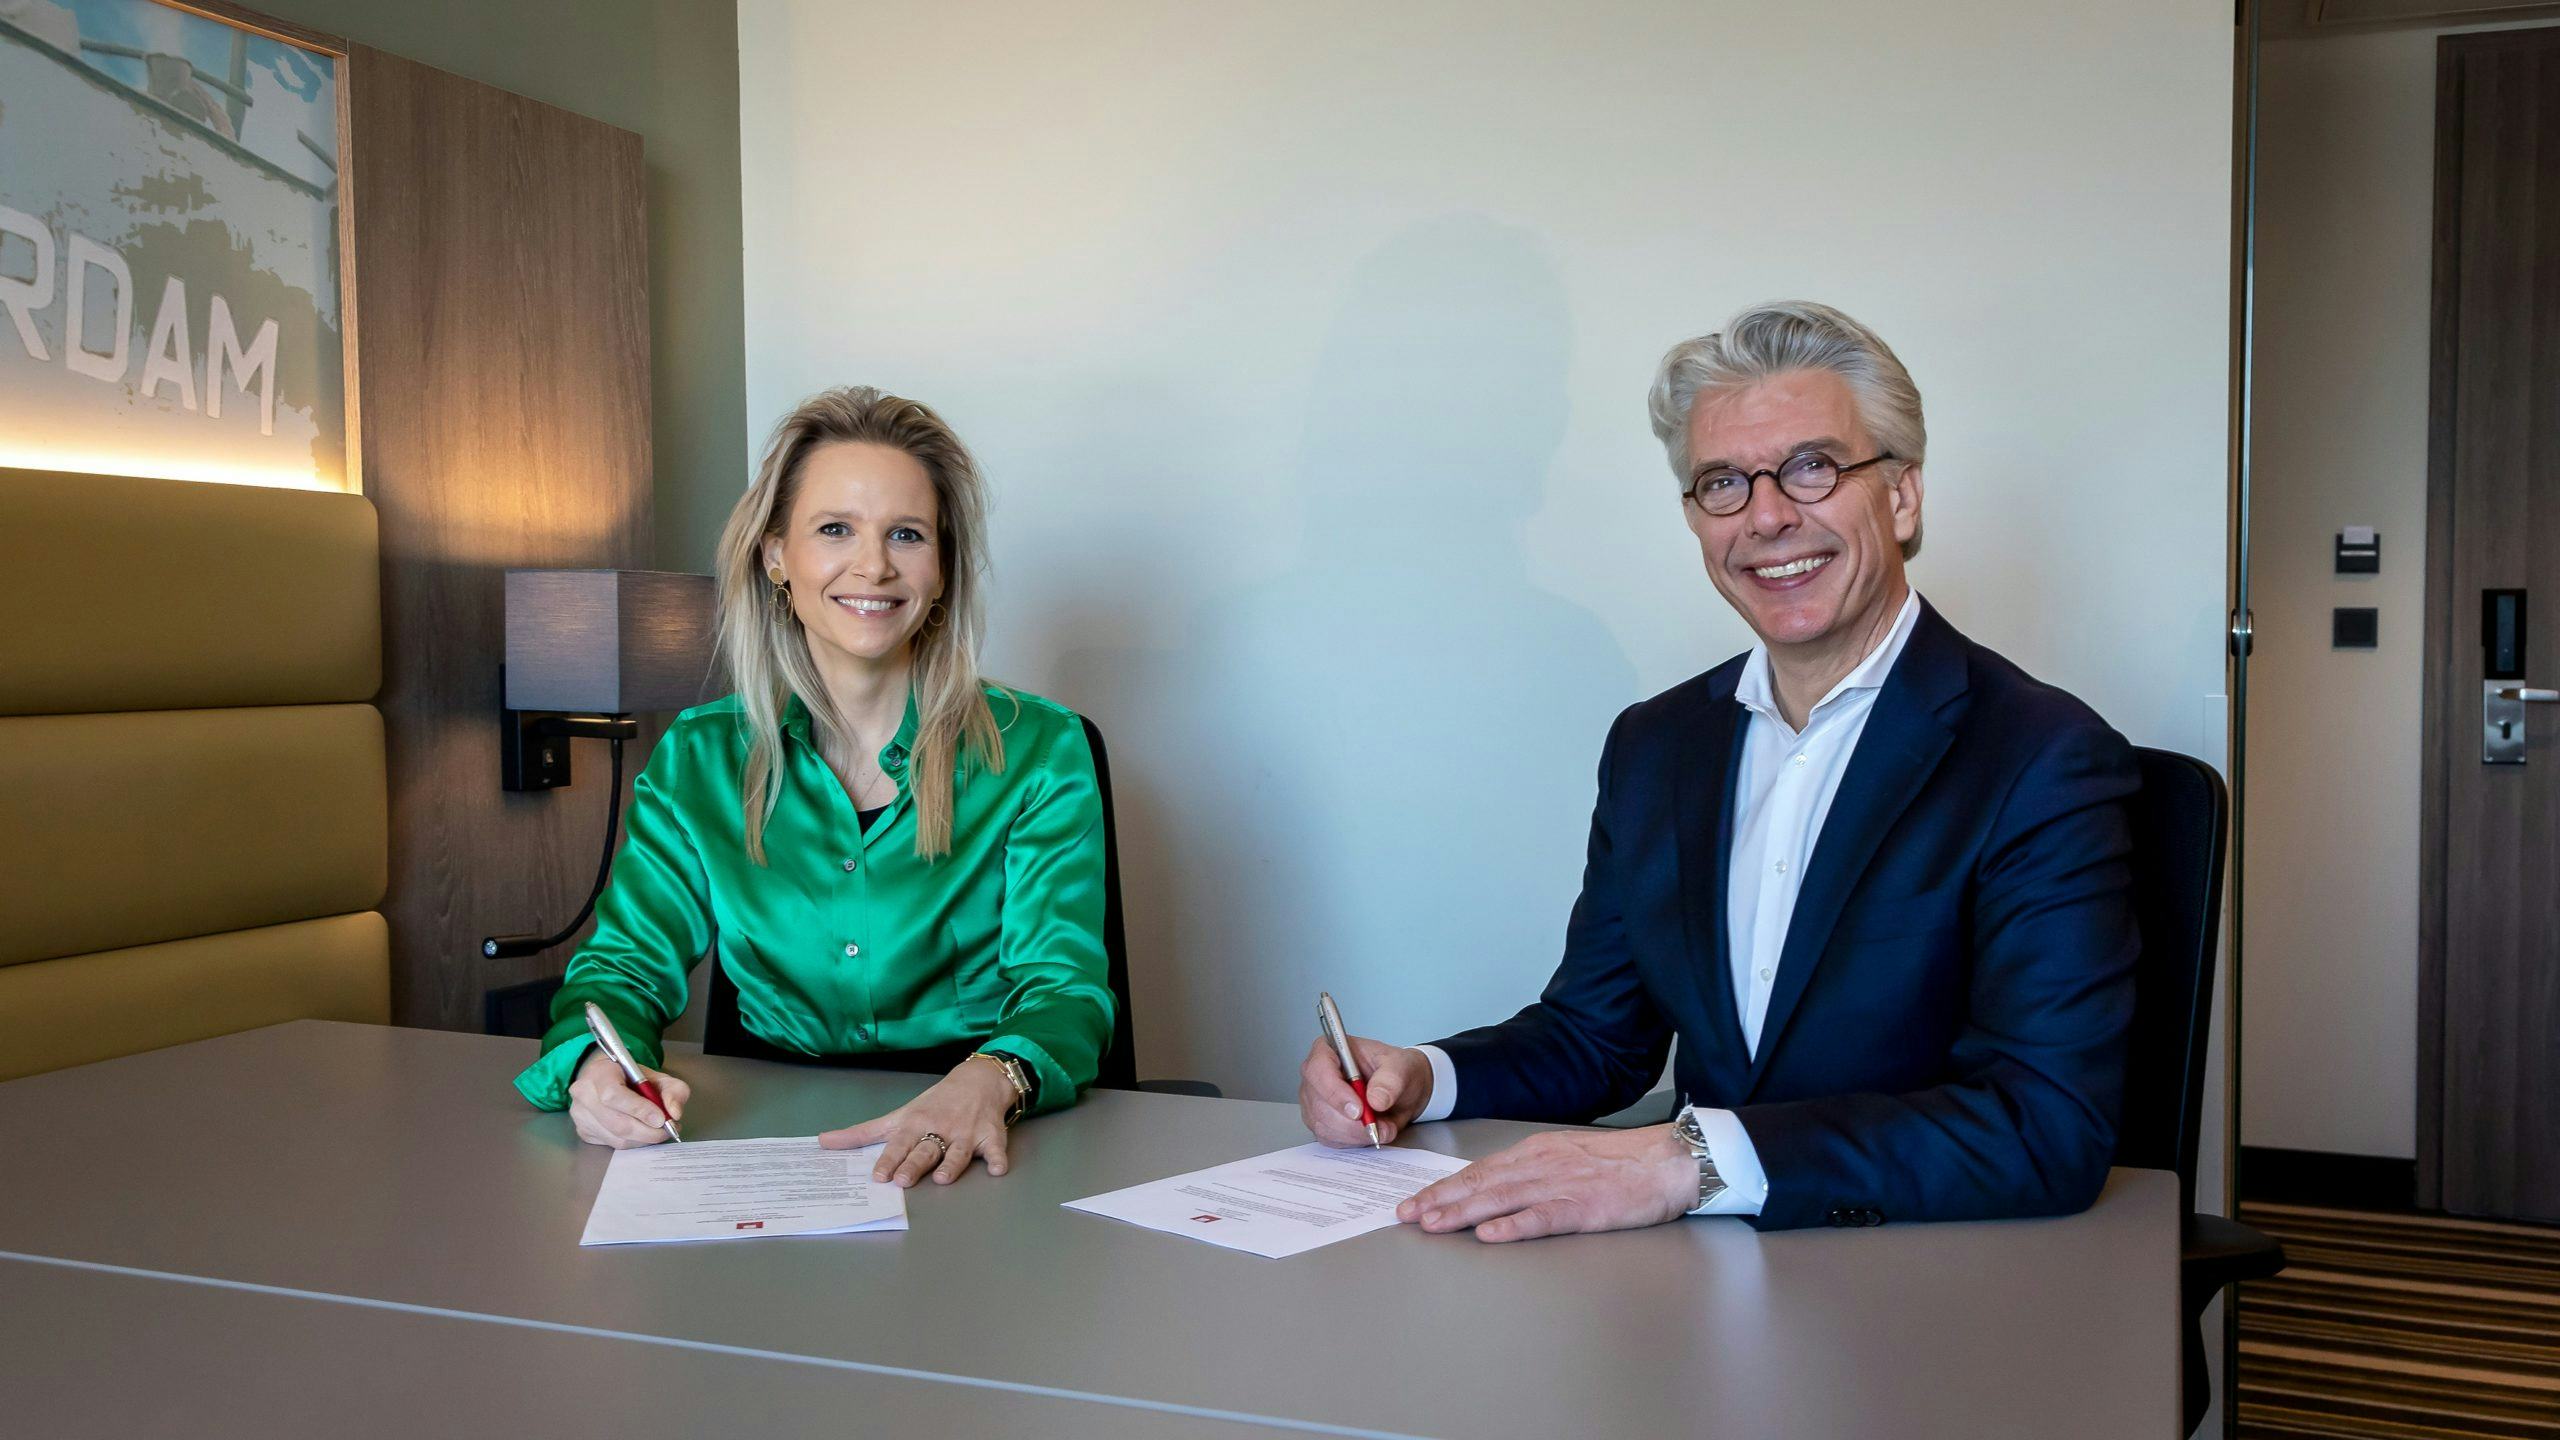 Annelou de Groot van IWG (links) en Alexander Kluit van Leonardo Hotels (rechts) tekenen de samenwerking. Foto: Photo Republic/Bibi Neuray